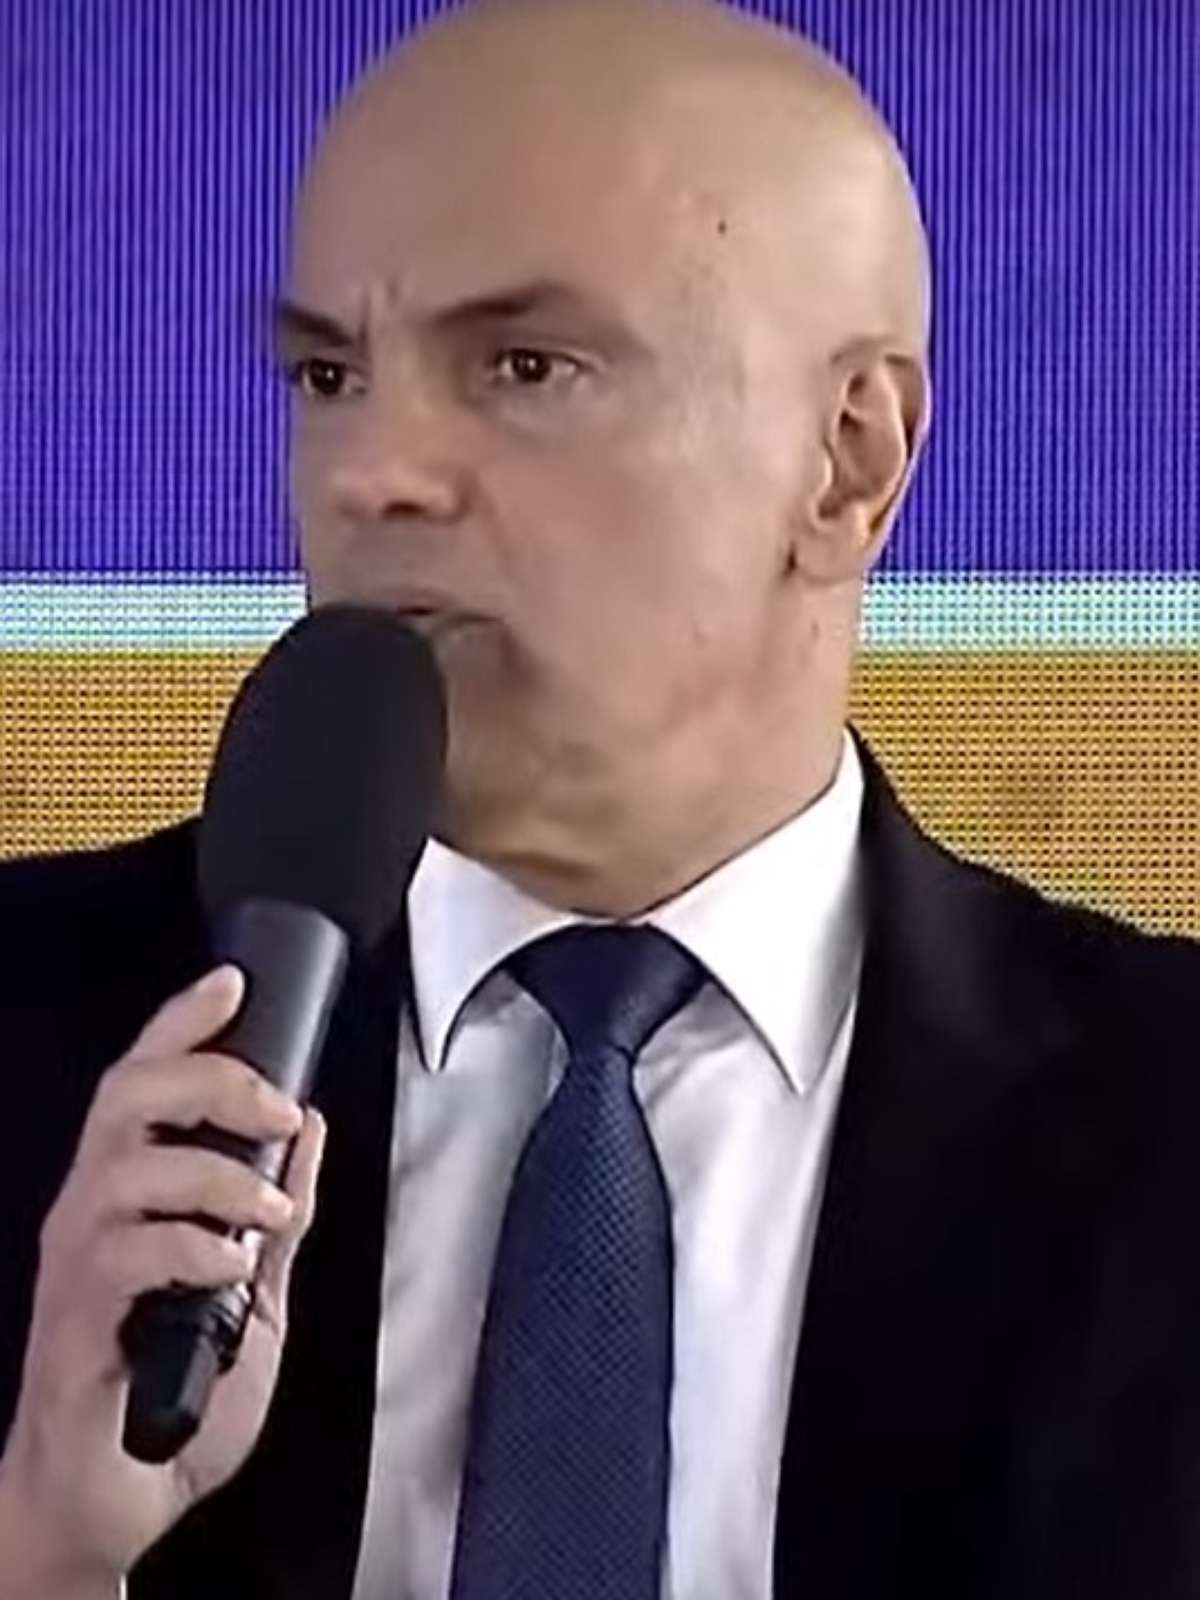 O Palmeiras não tem Mundial, como diz Alexandre de Moraes? Marco